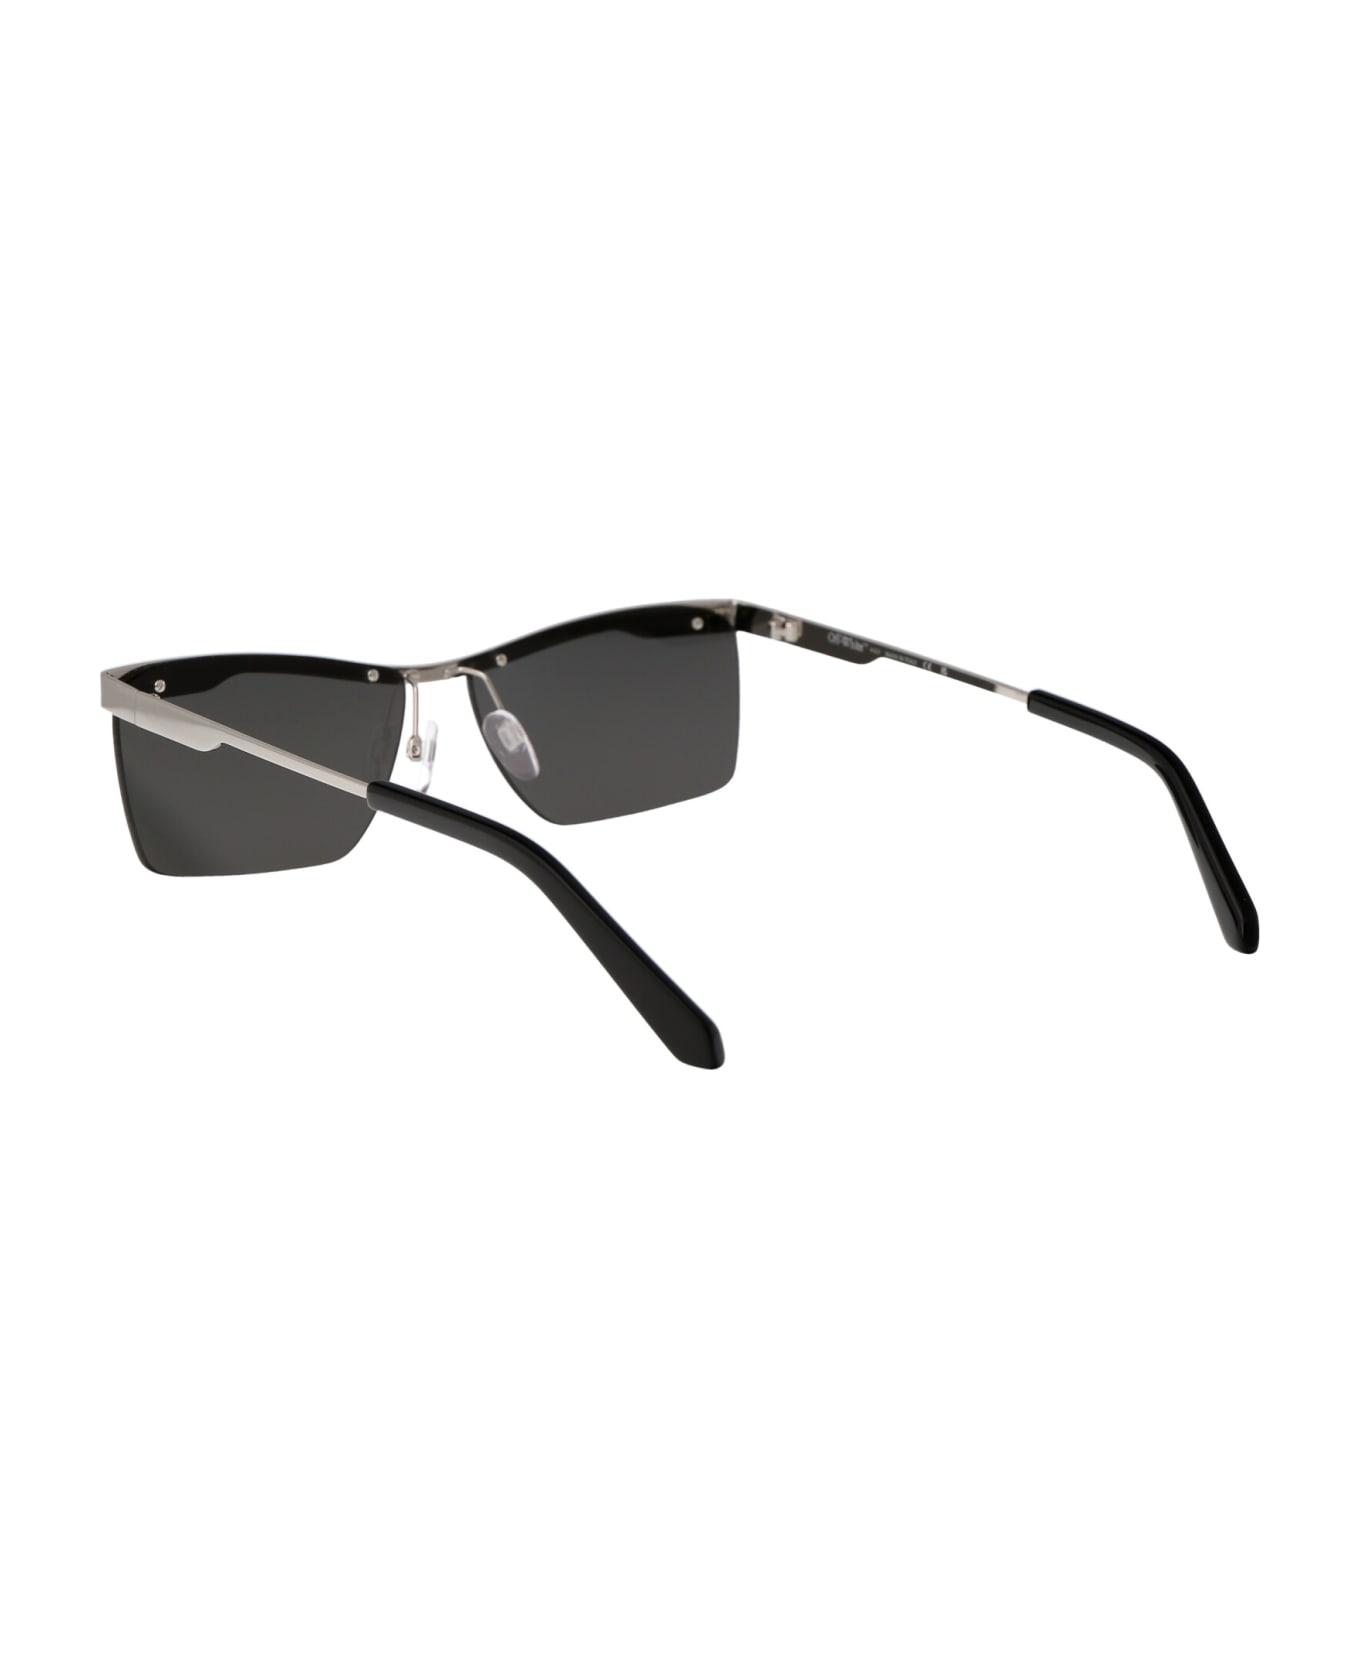 Off-White Rimini Sunglasses - 7272 SILVER